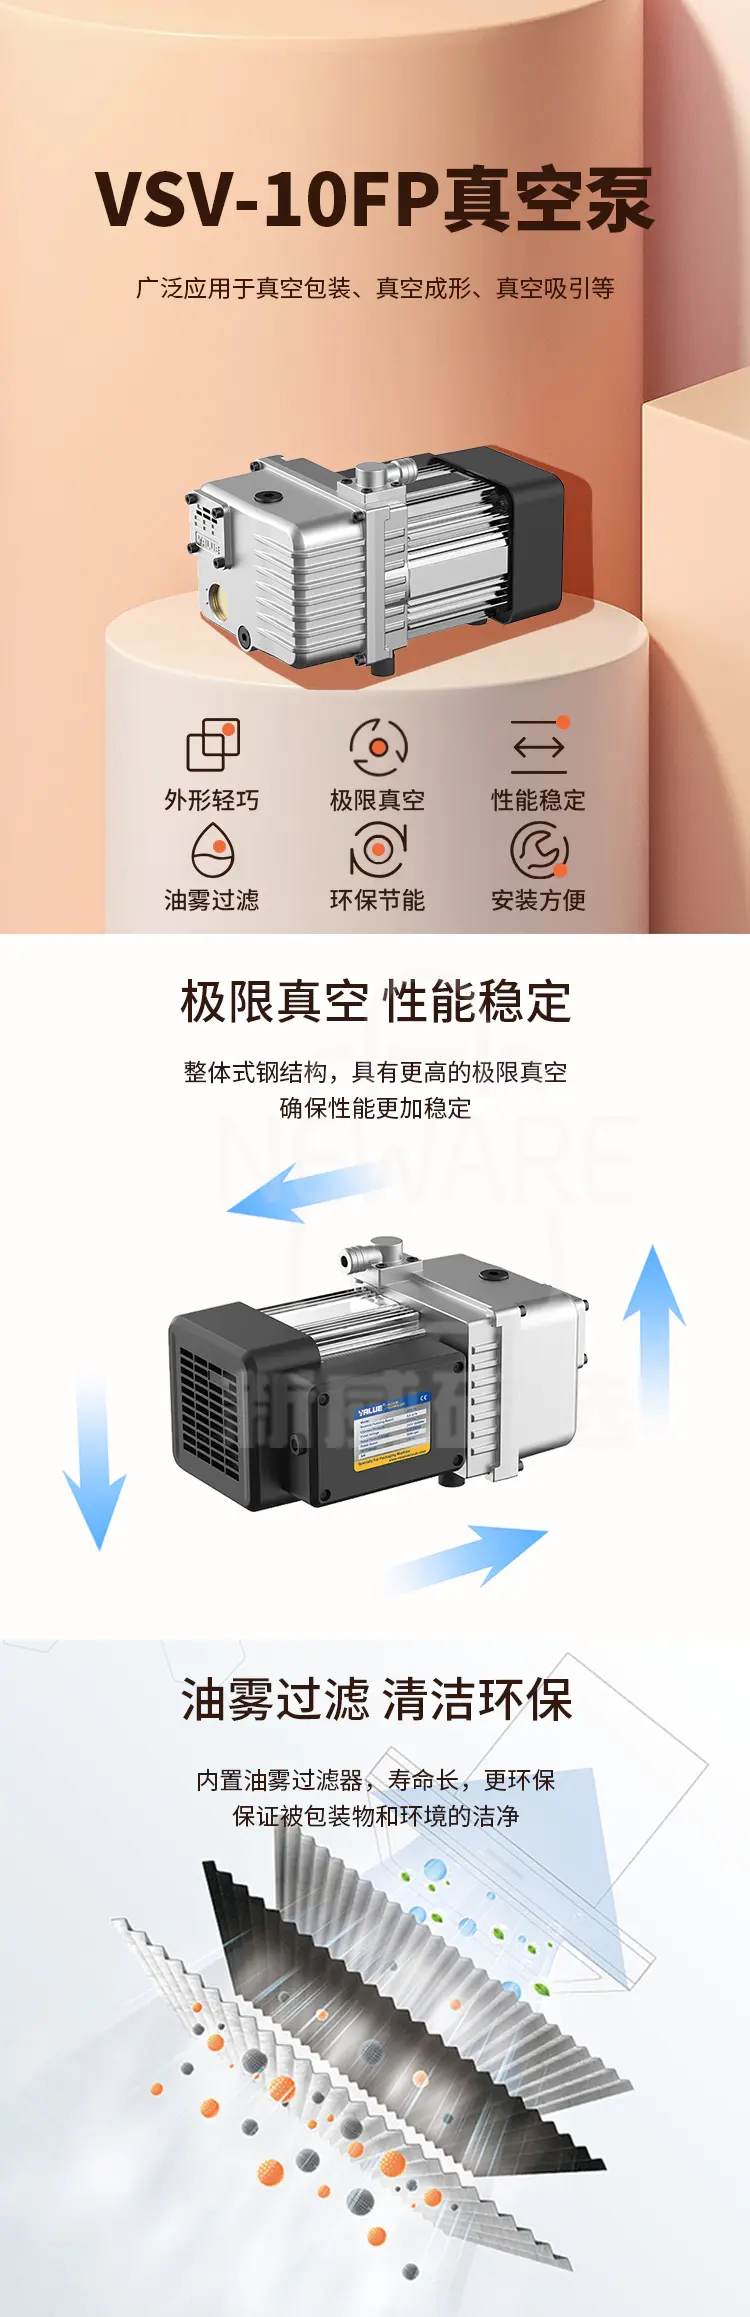 VSV-10FP真空泵商品介绍1